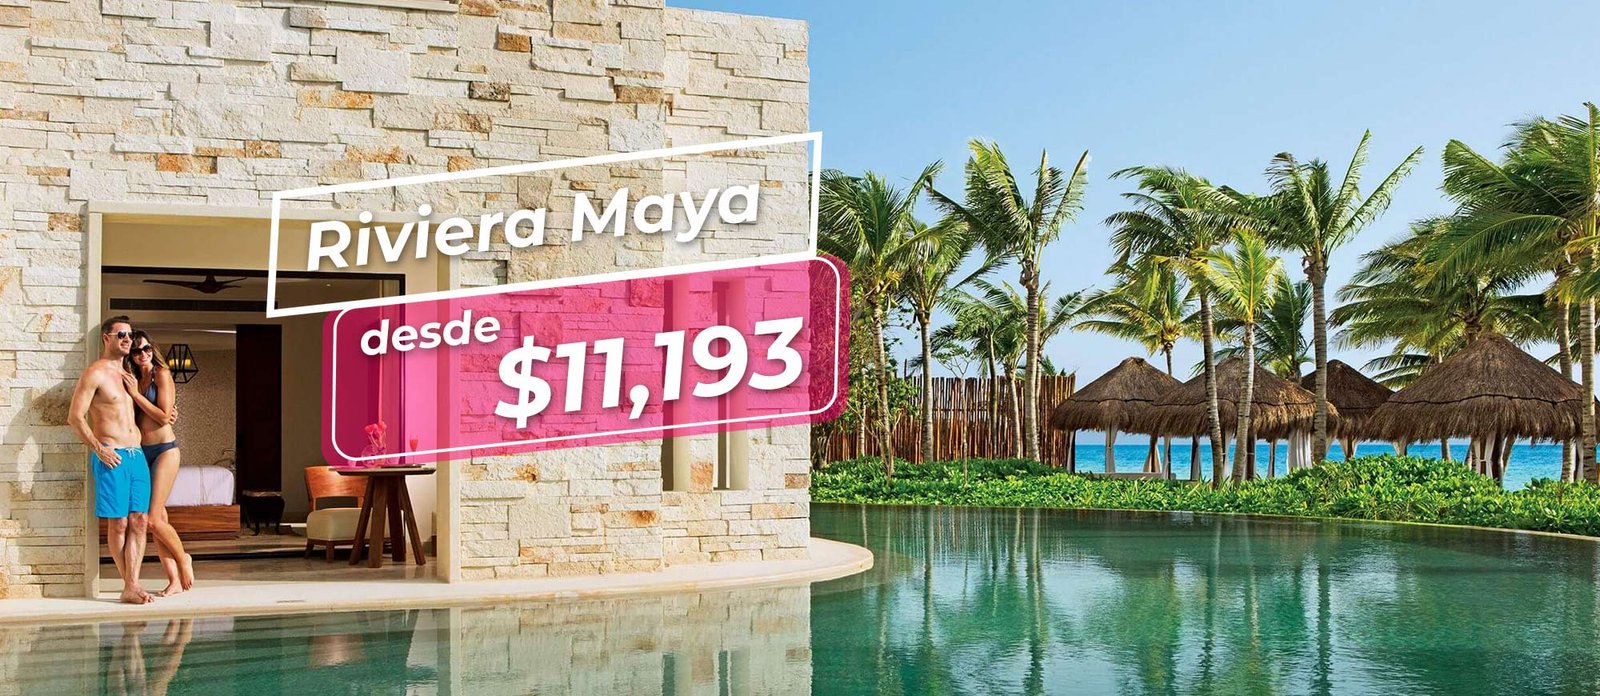 riviera maya todo incluido ofertas